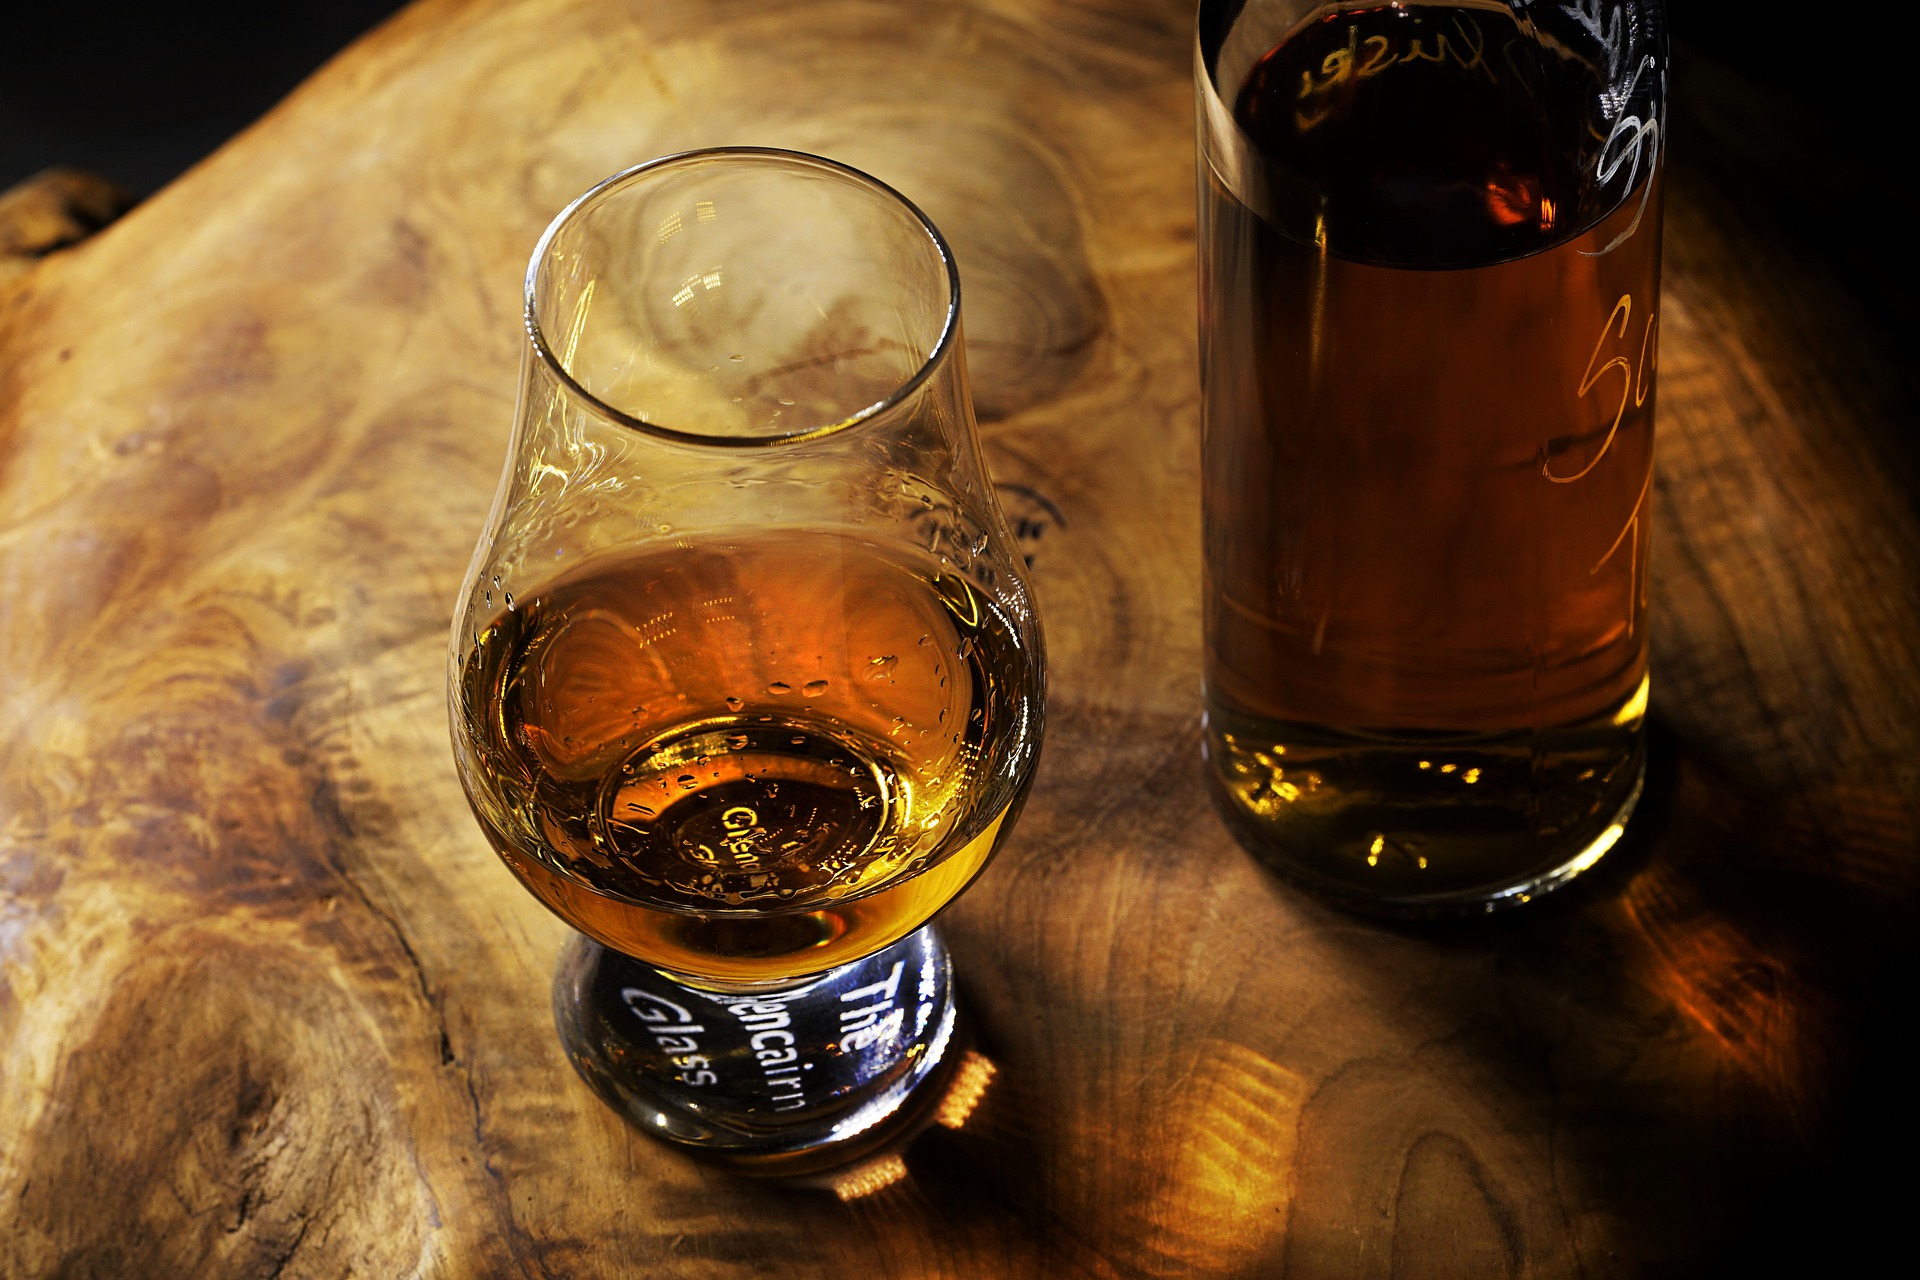 Whisky tasting in Scotland